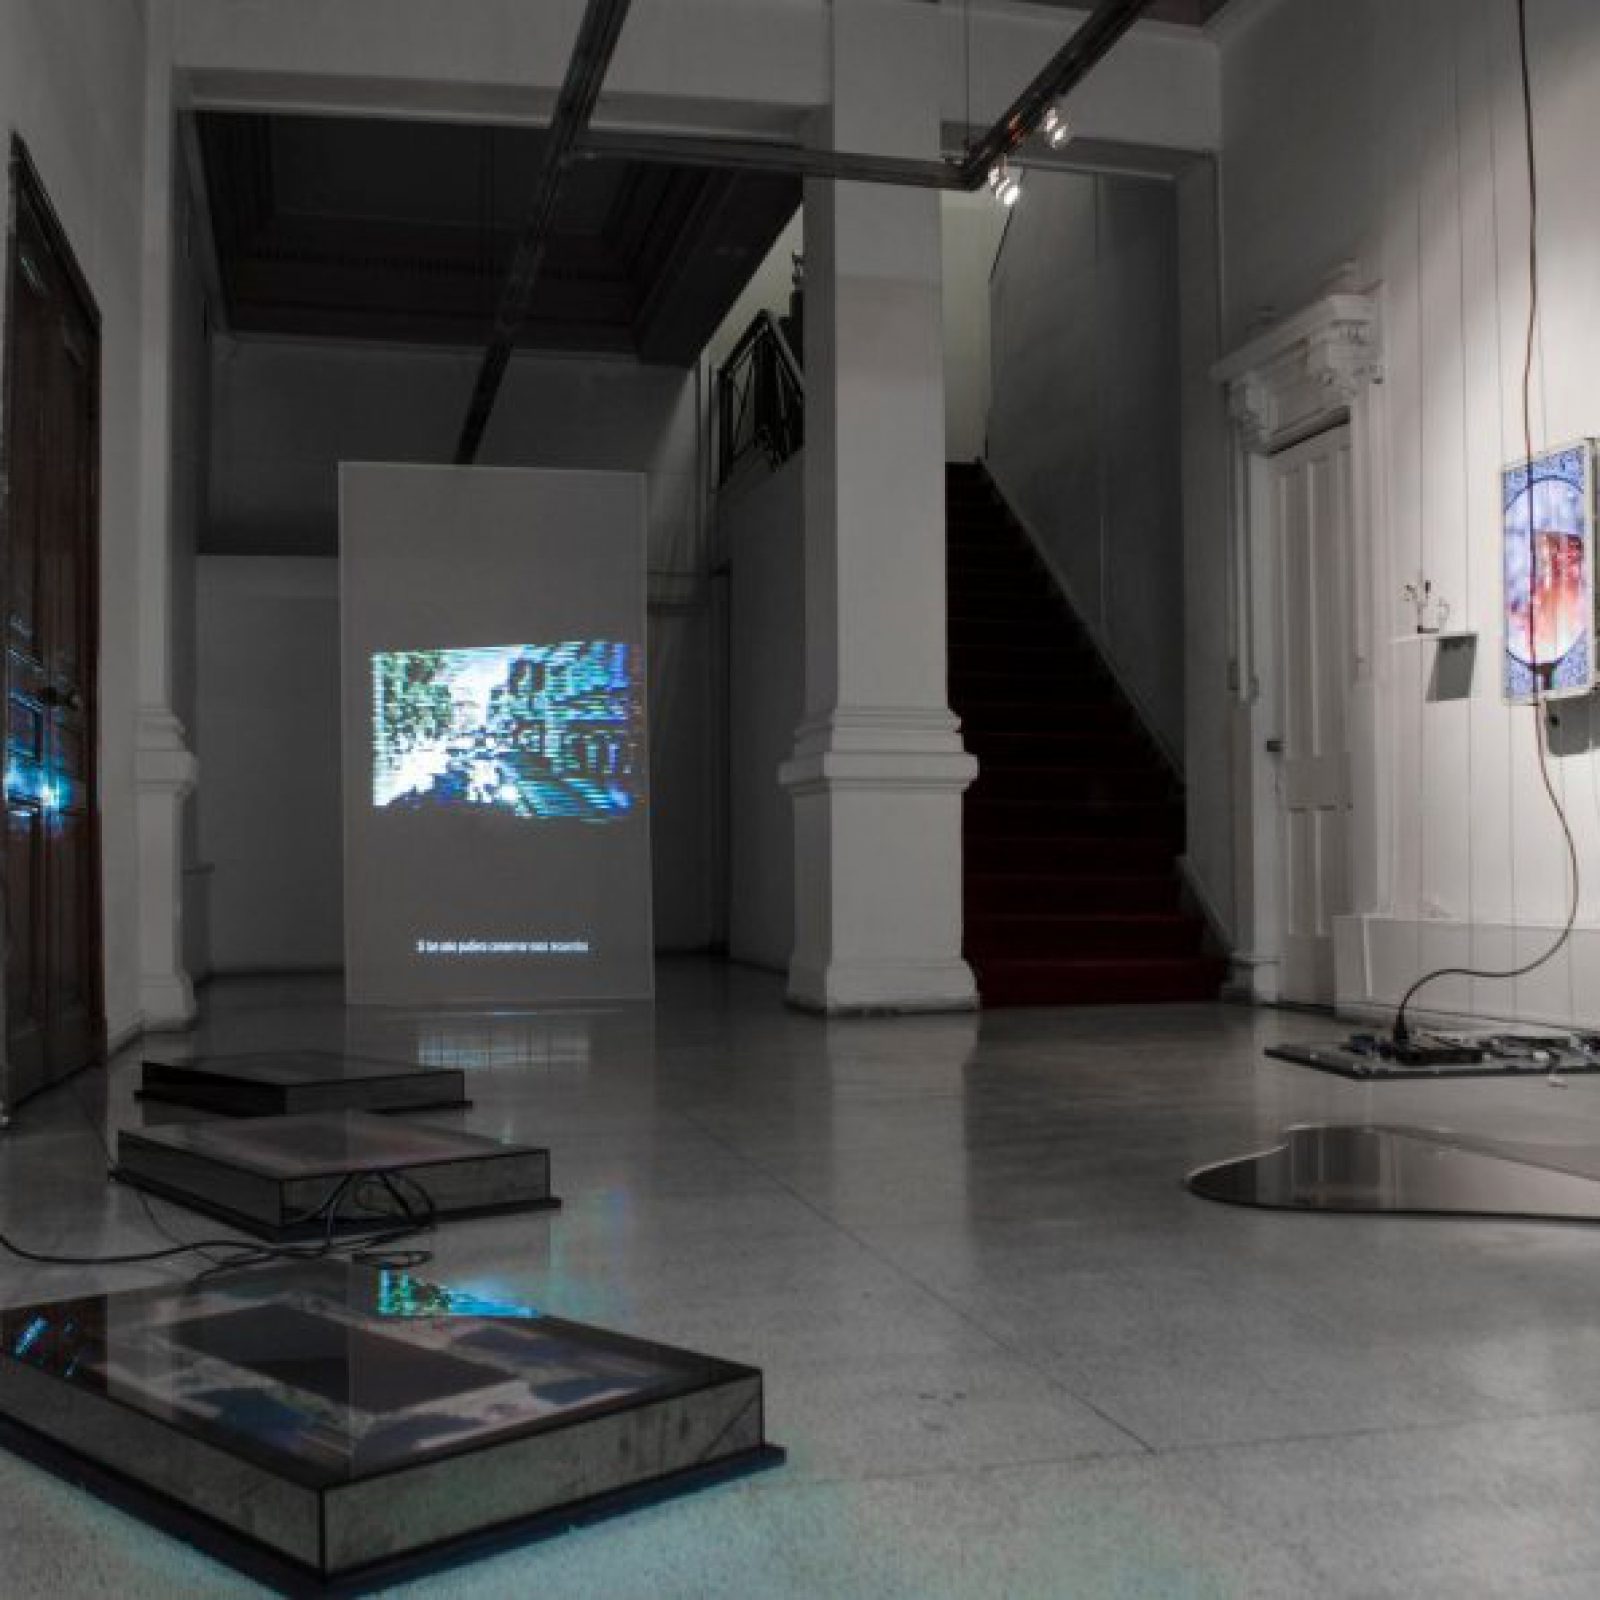 Vista de la exposición "Imágenes en transición", de Francisco Belarmino, en Galería BECH, Santiago, 2019. Foto: Diego Argote